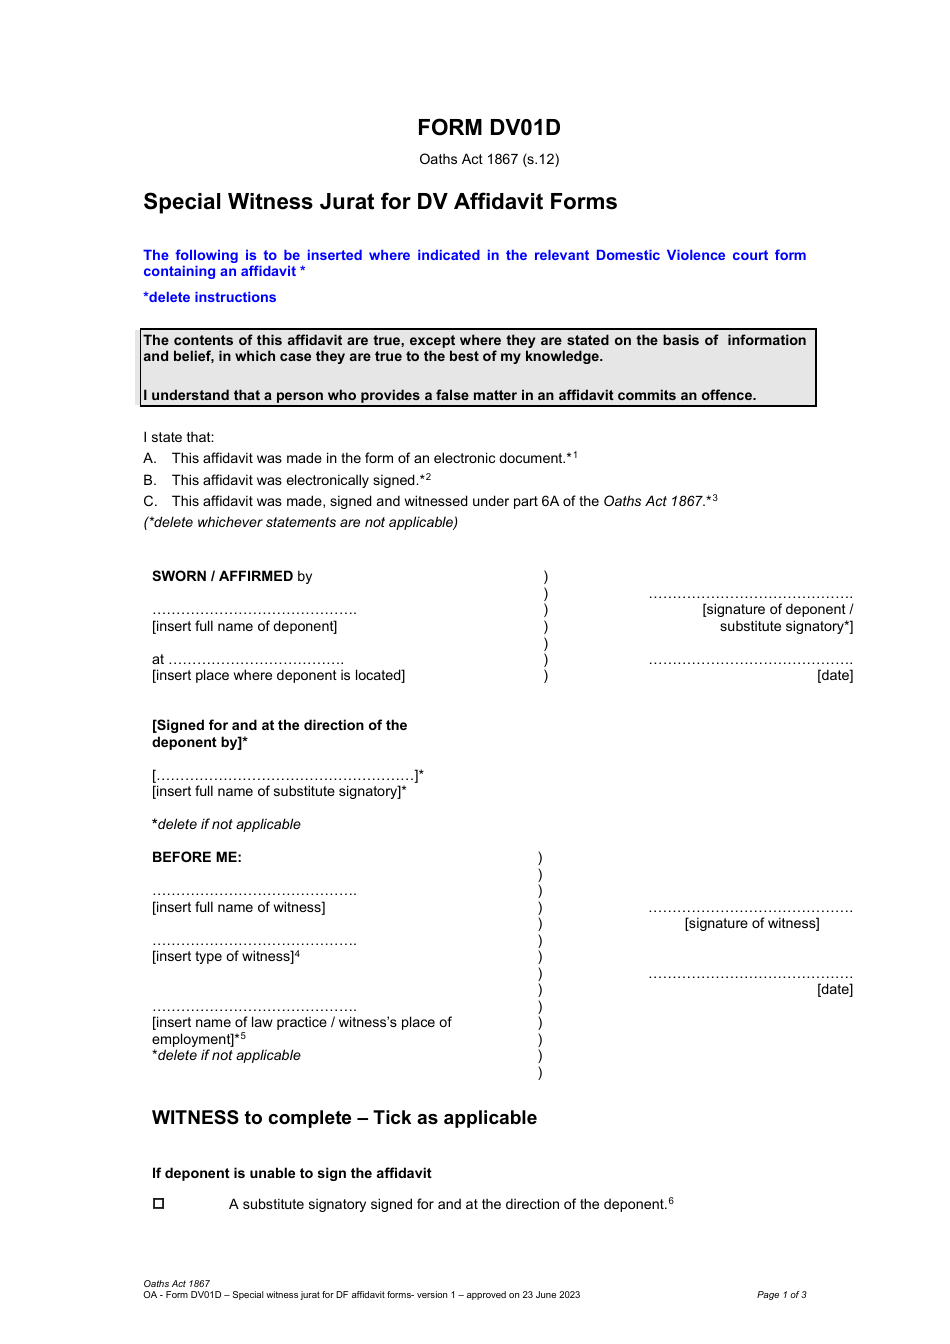 Form DV01D Special Witness Jurat for Dv Affidavit Forms - Queensland, Australia, Page 1